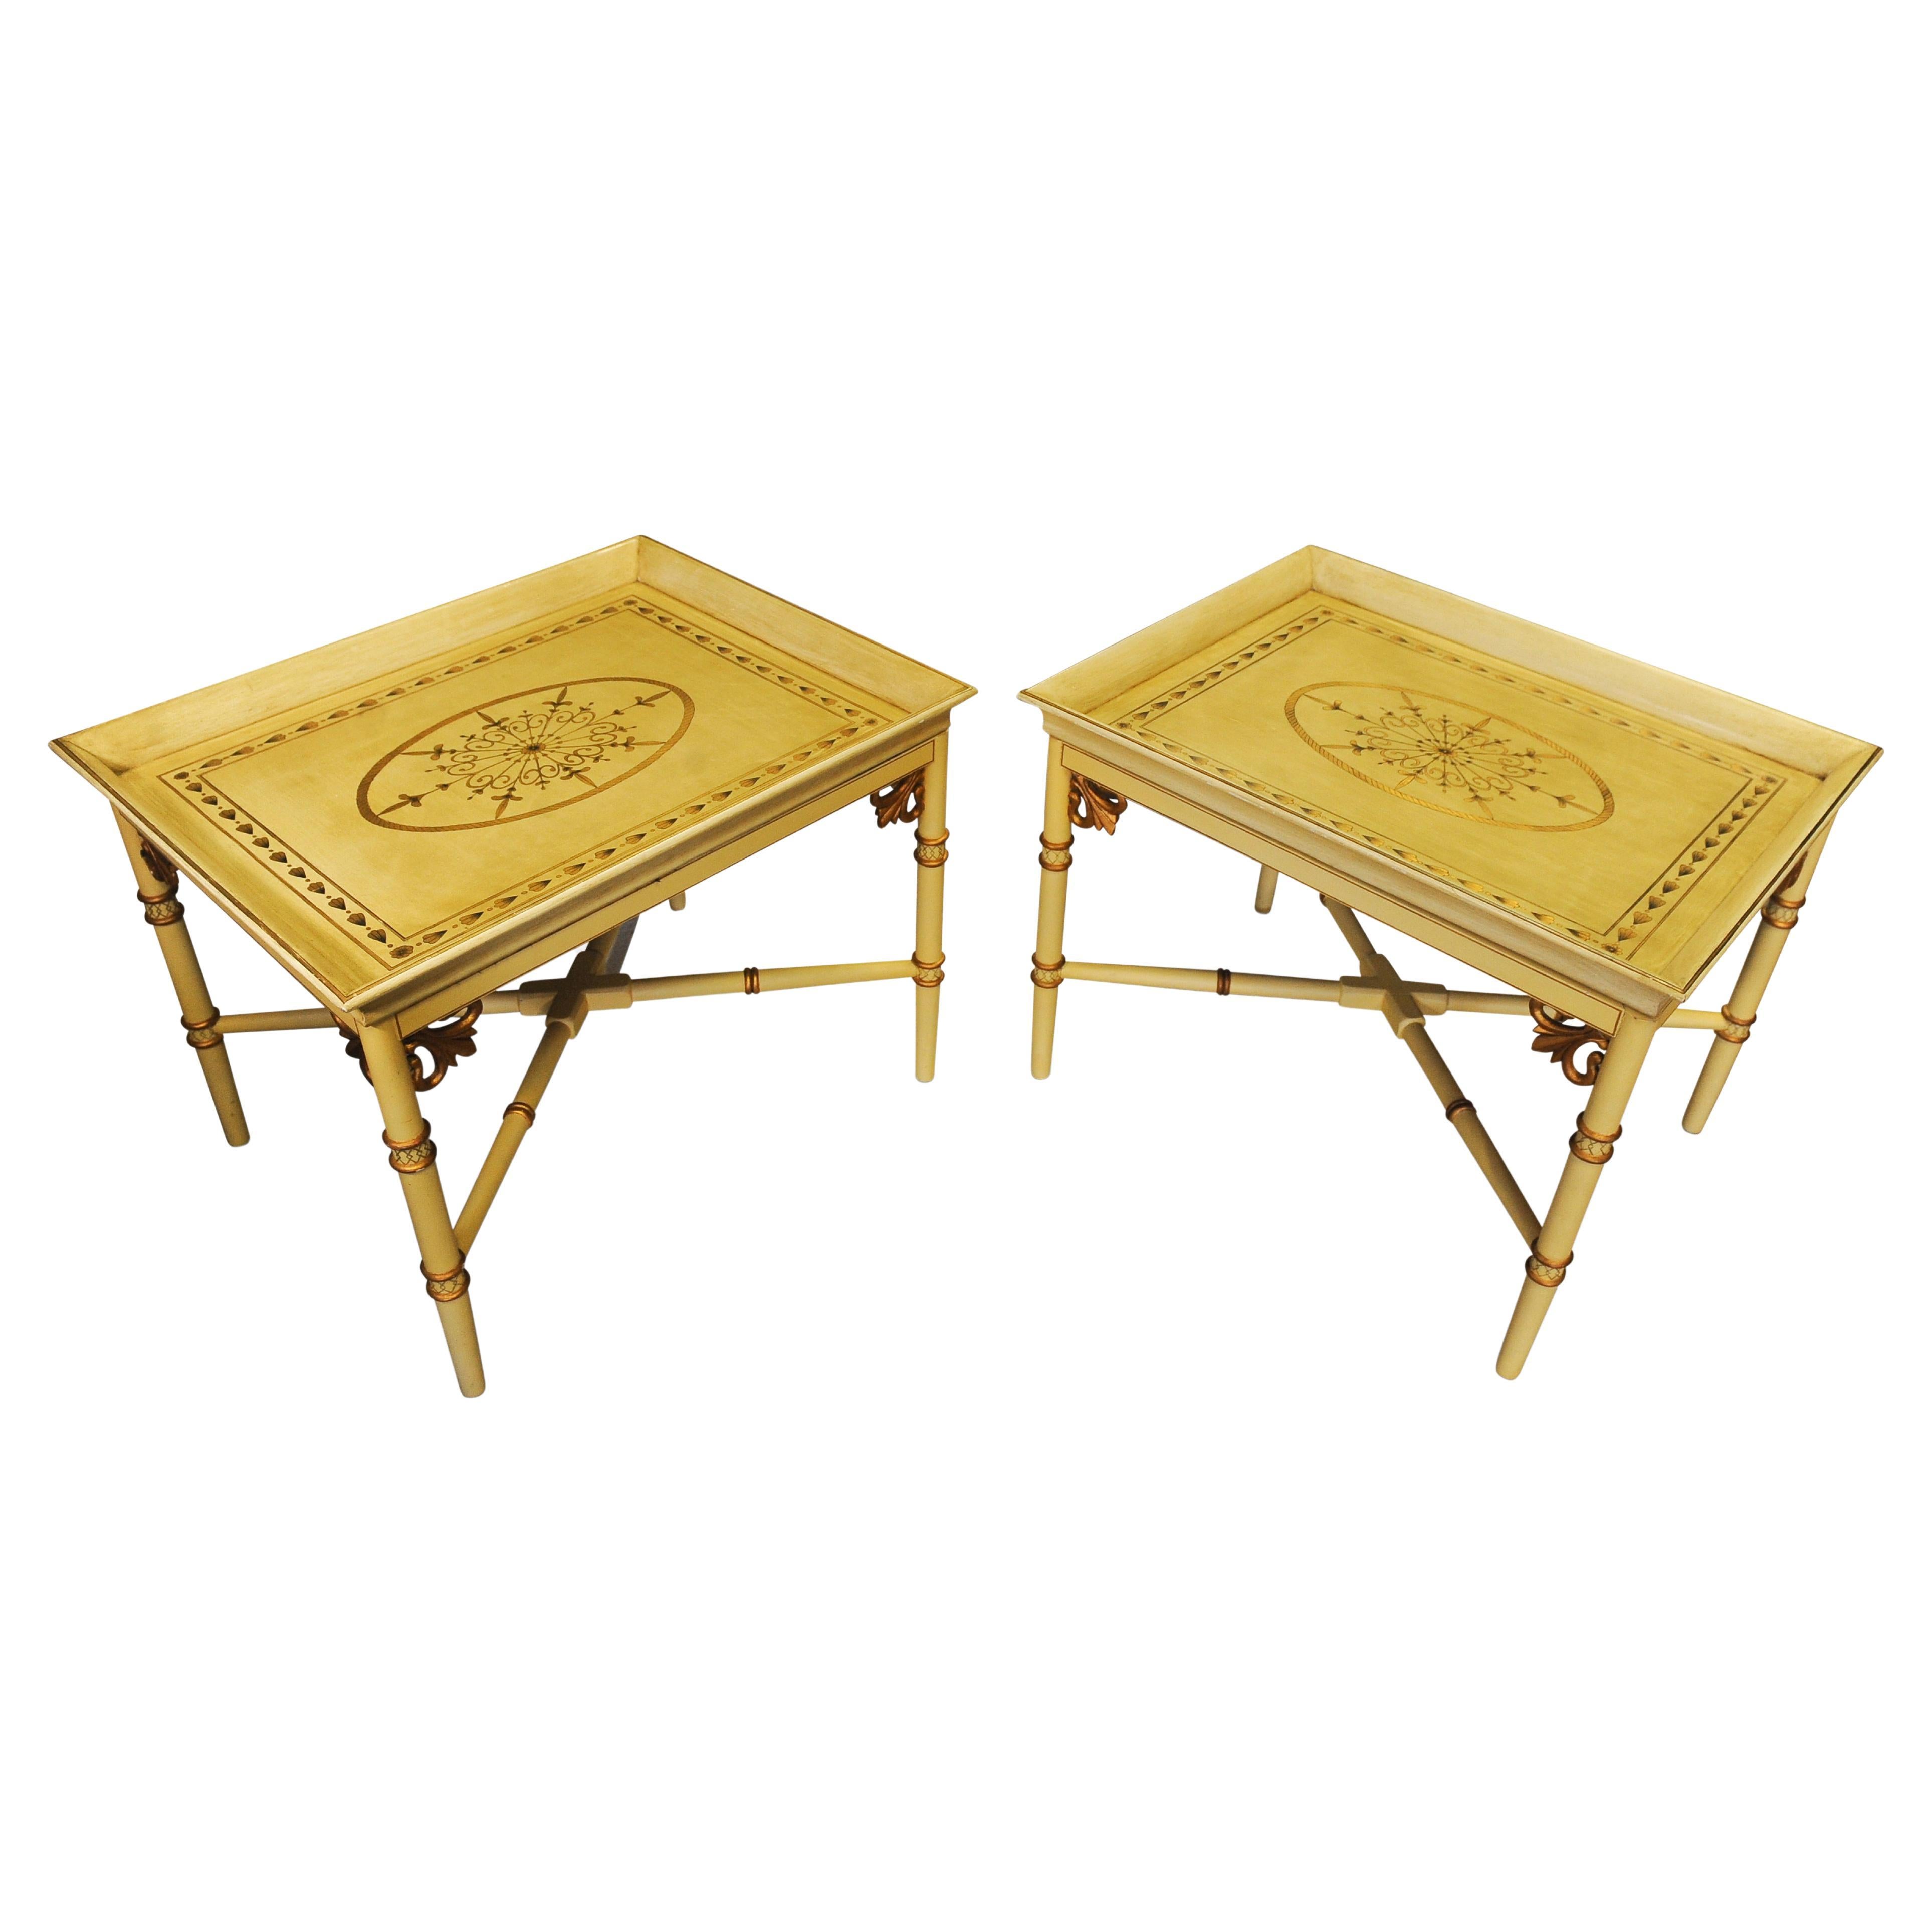 Paire de tables d'appoint à plateau en faux bambou de style Chippendale1 sur bases en X